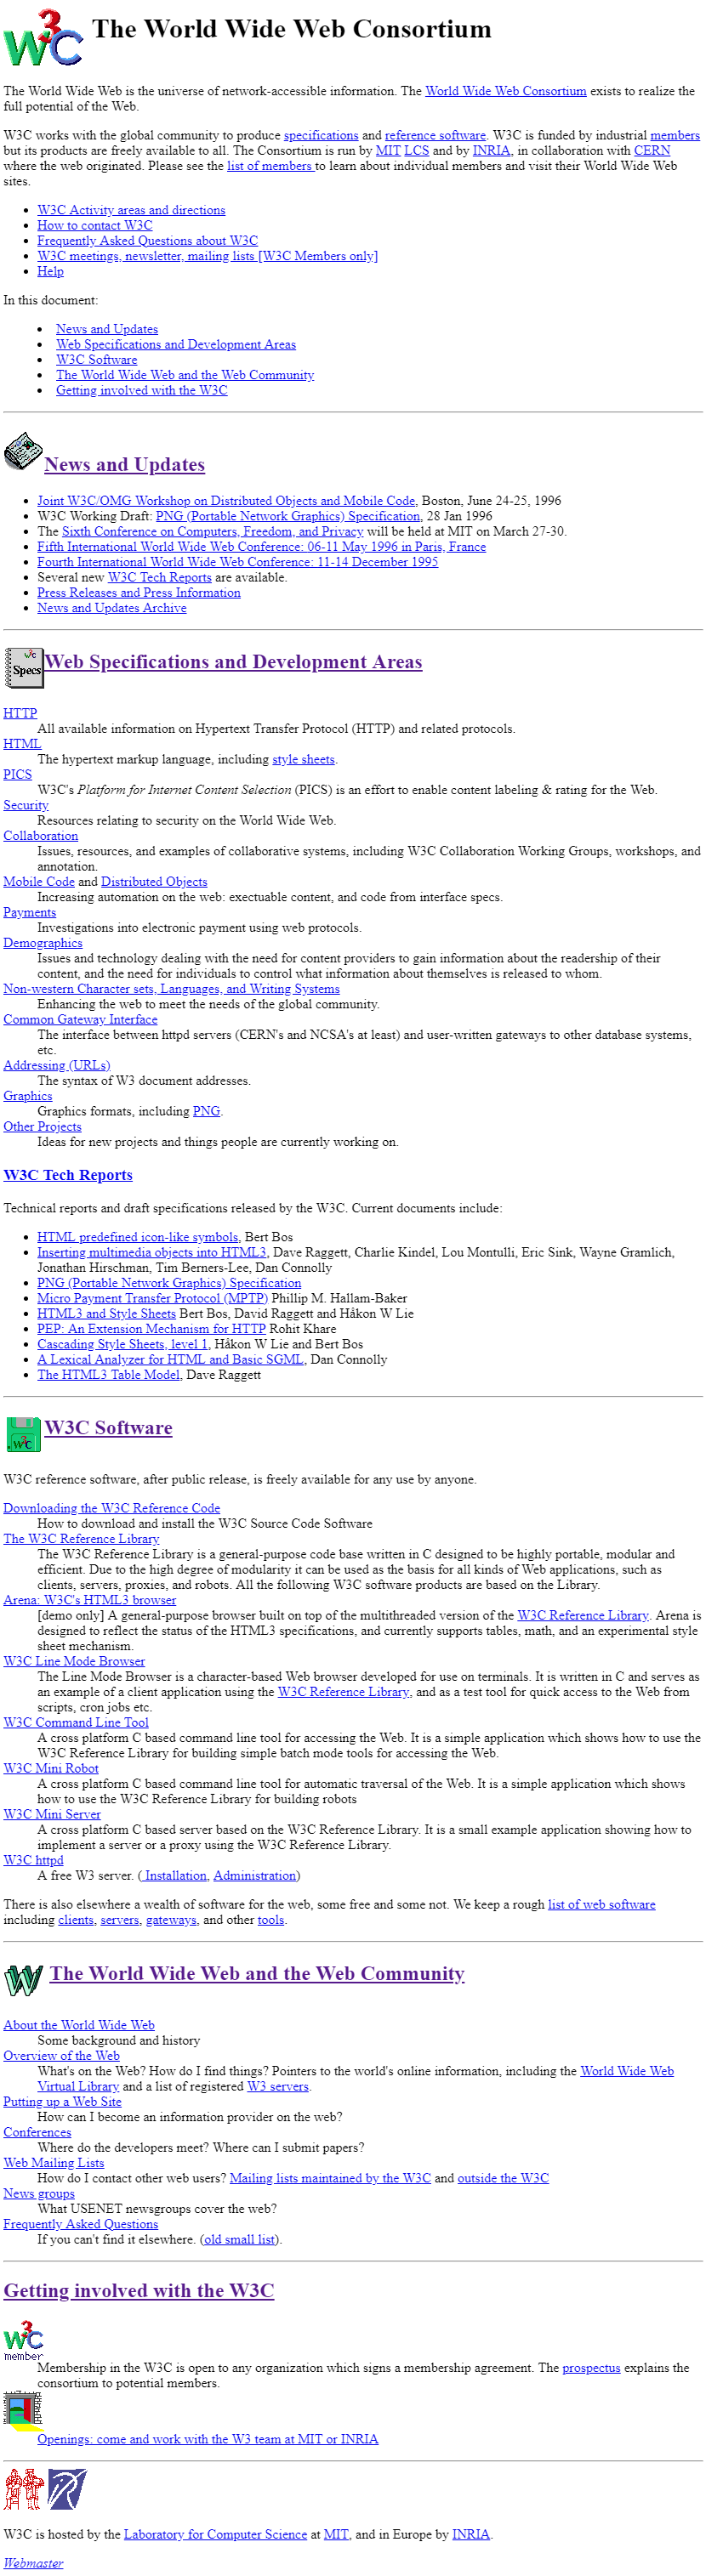 W3C.org in 1996